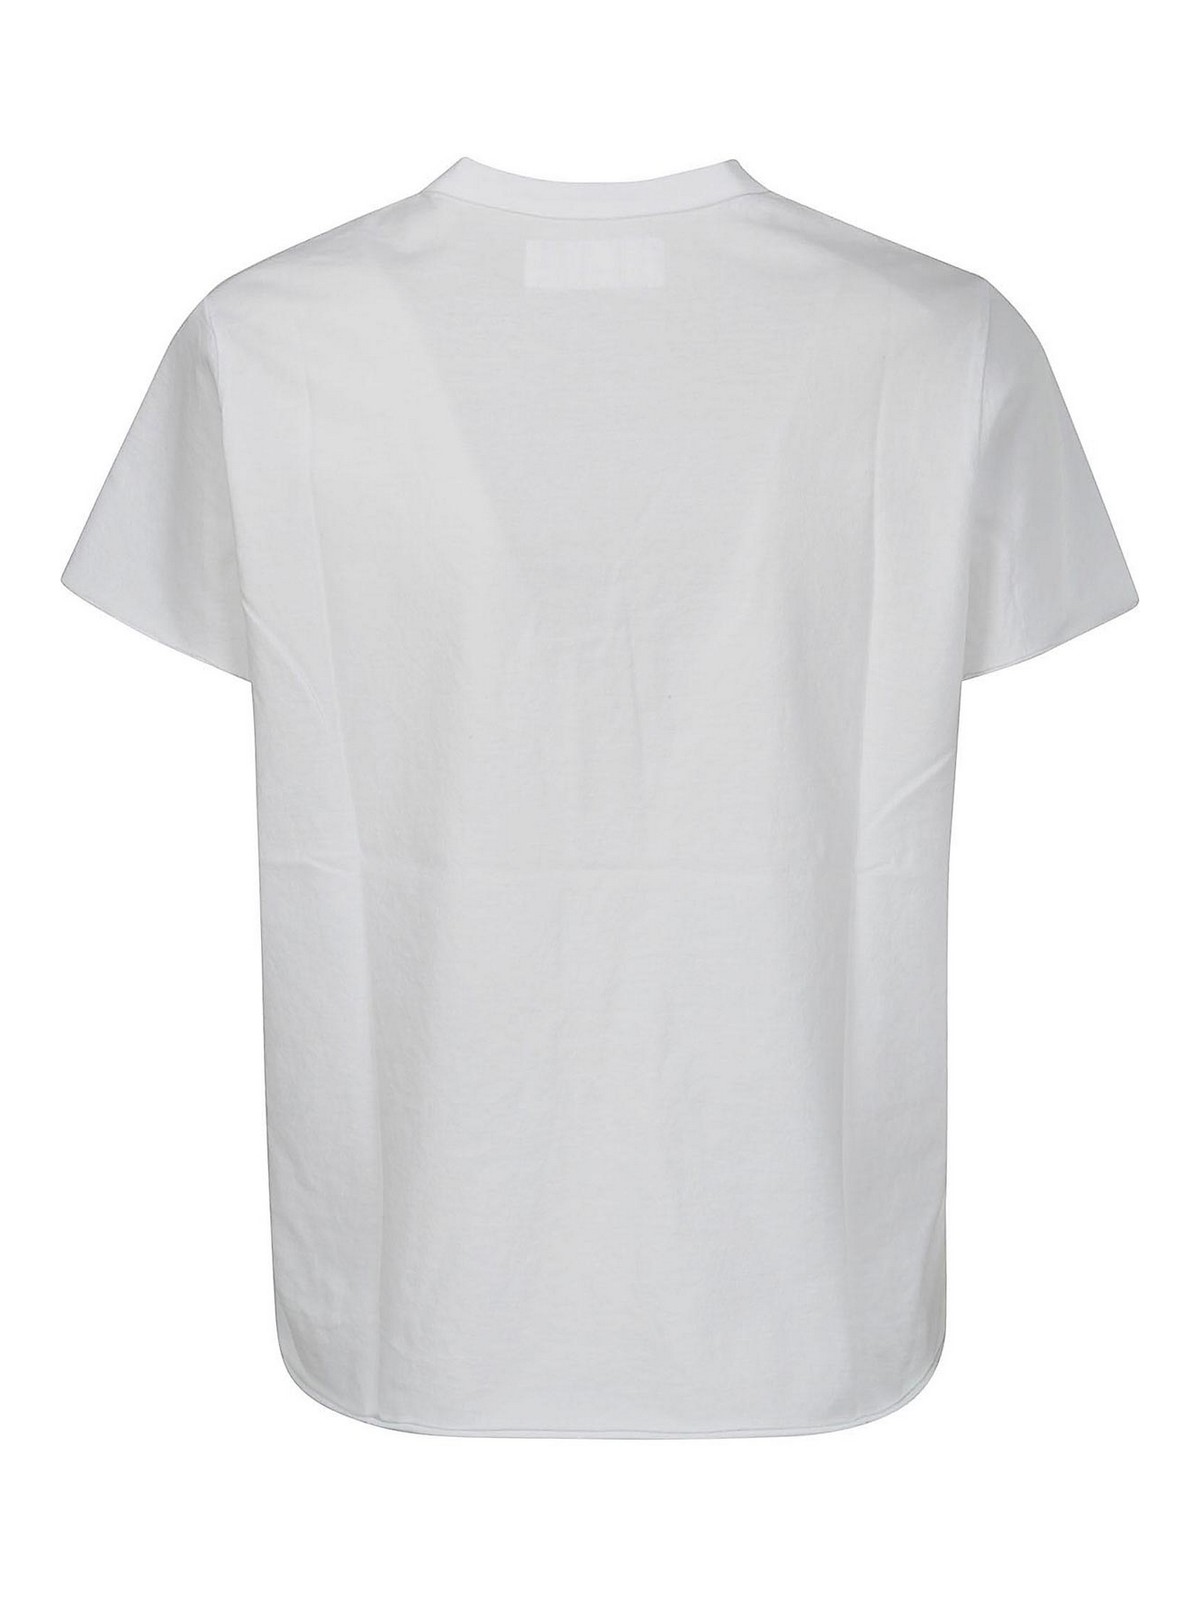 Shop Labo.art Camiseta - Blanco In White